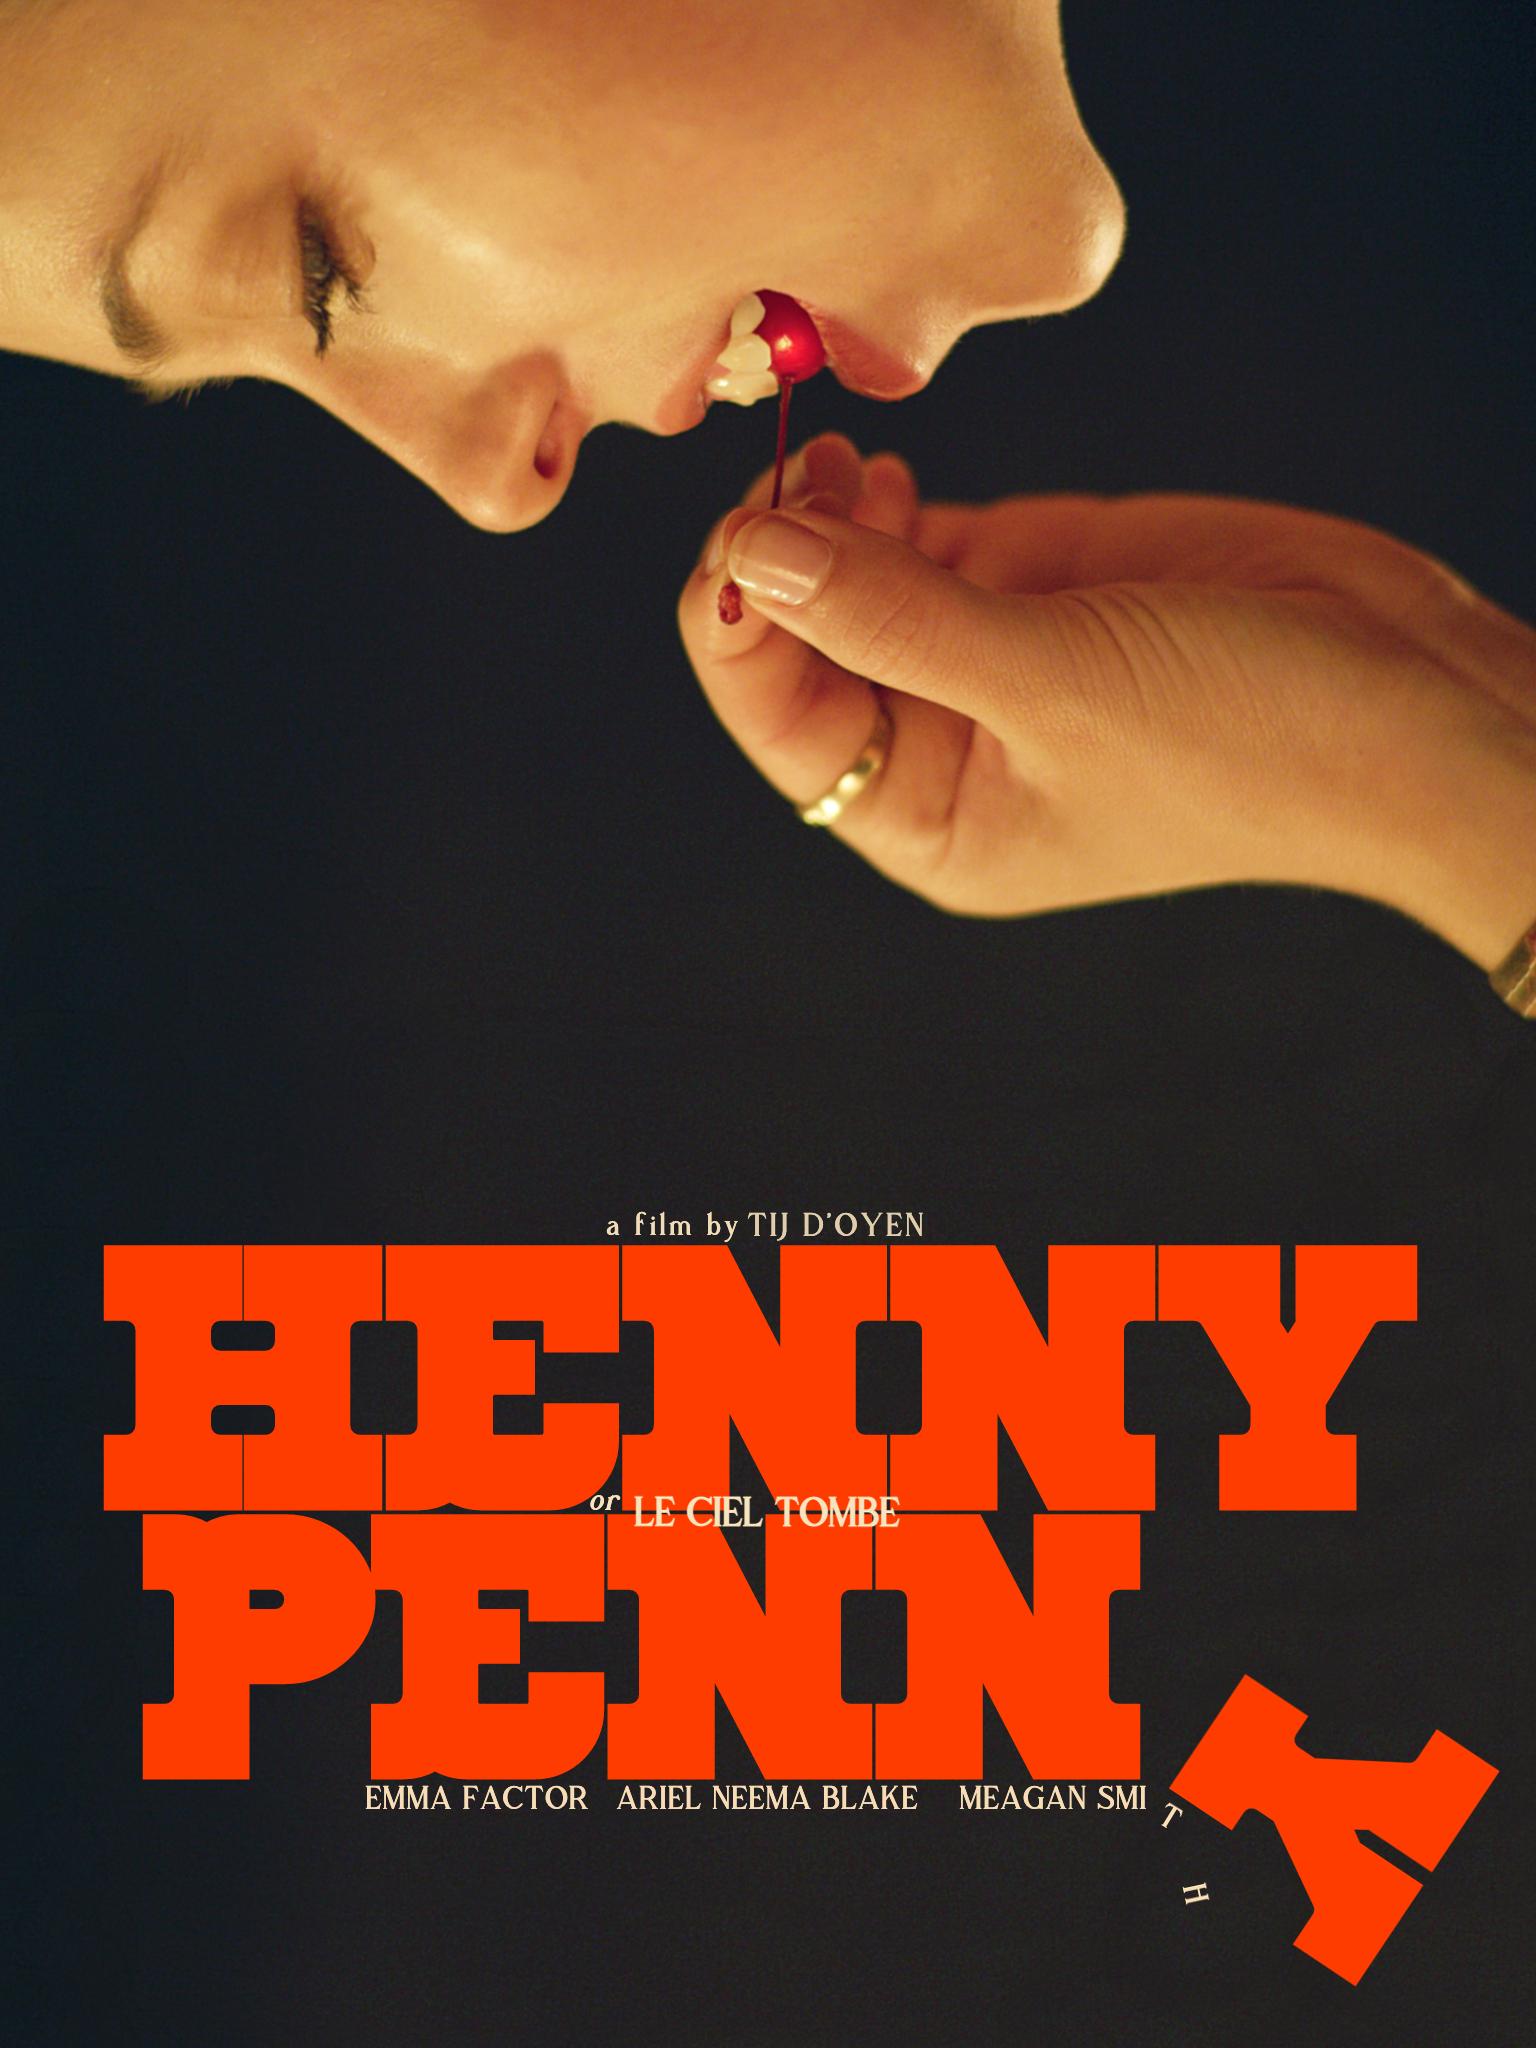 Henny Penny